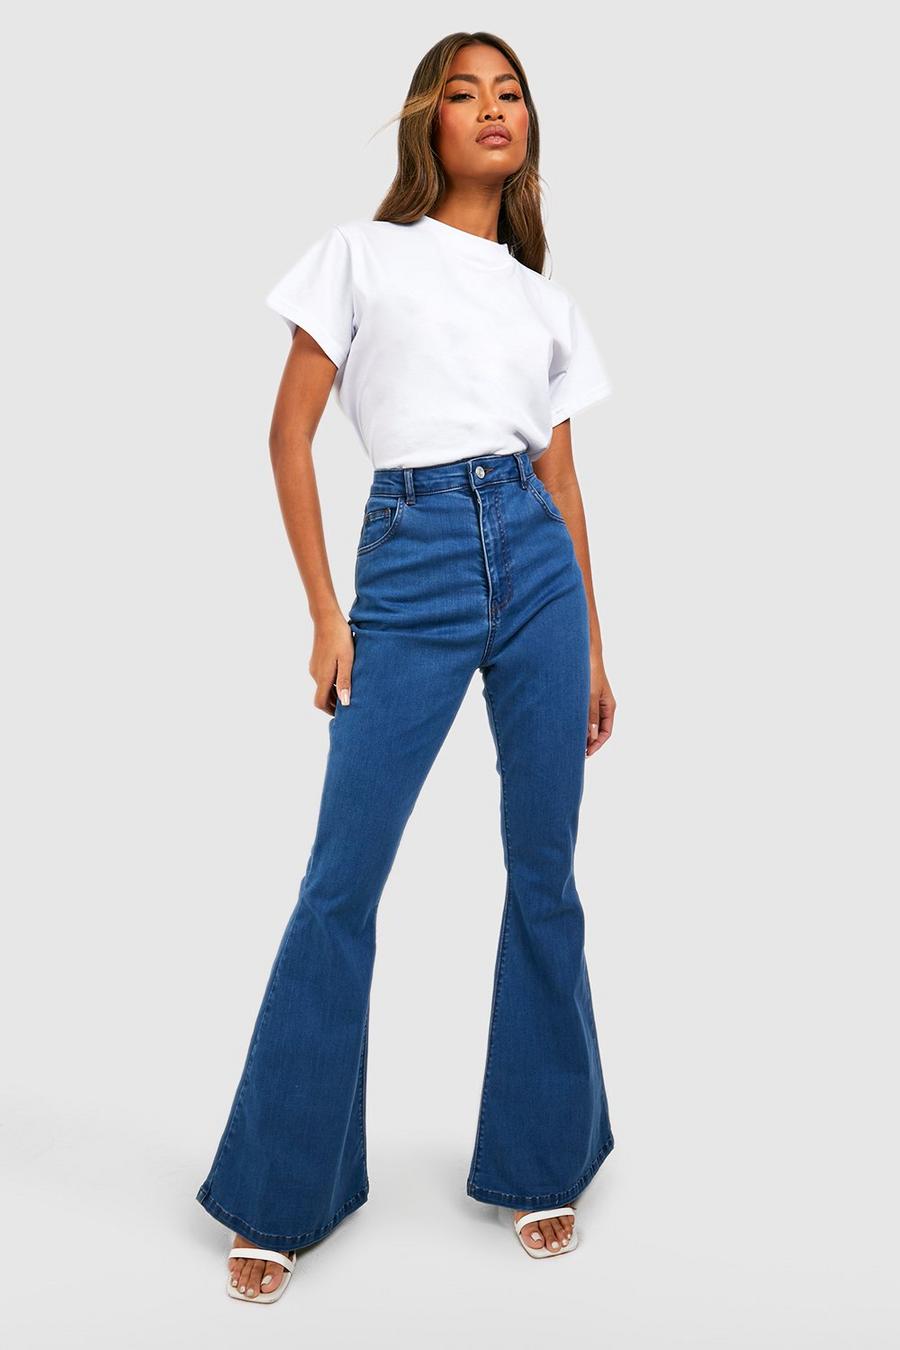 Best denim jeans for women, butt lifting and shape high waist